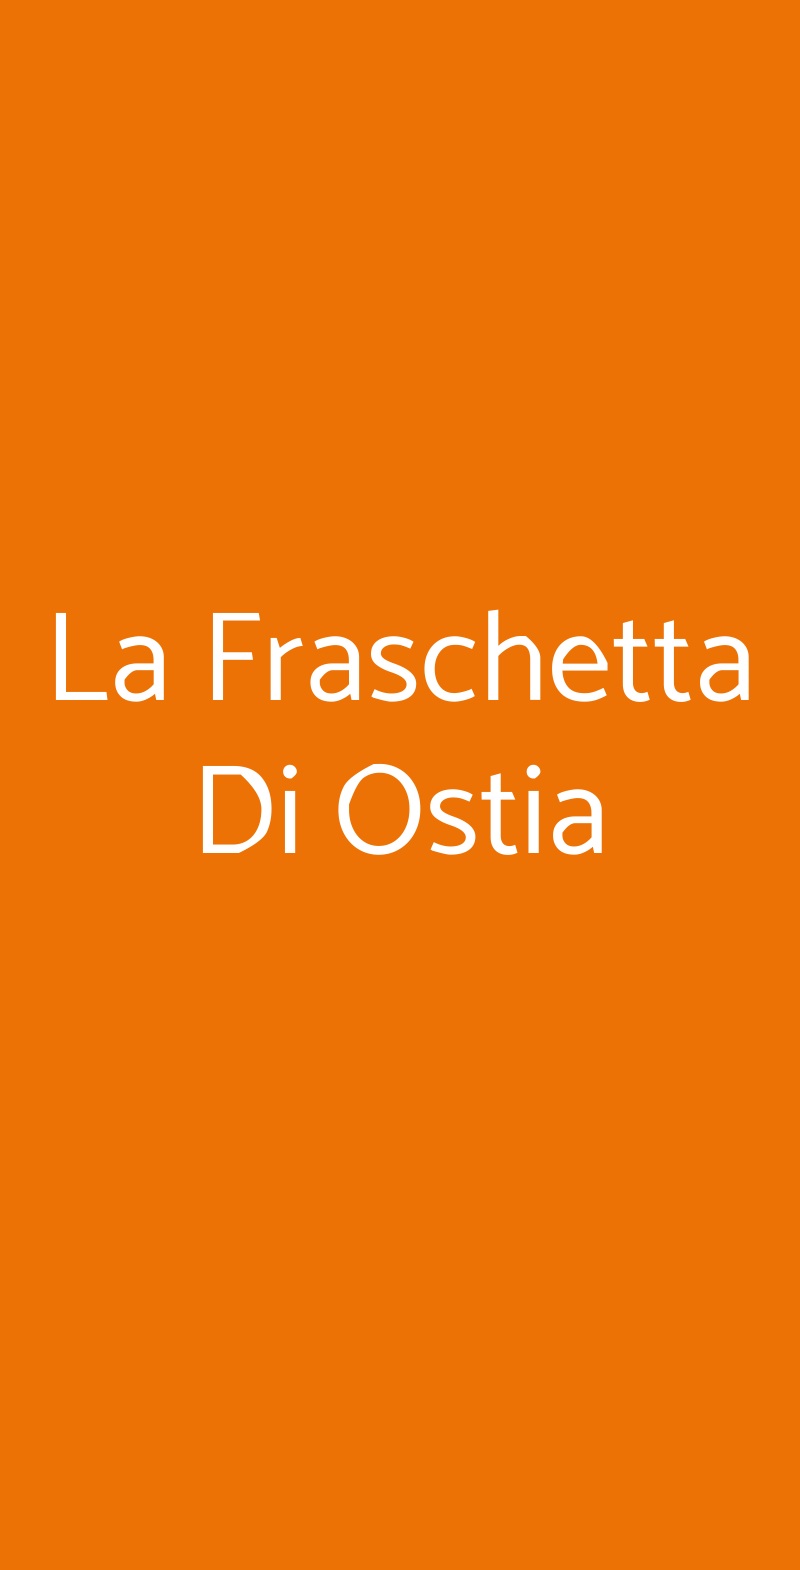 La Fraschetta Di Ostia Roma menù 1 pagina